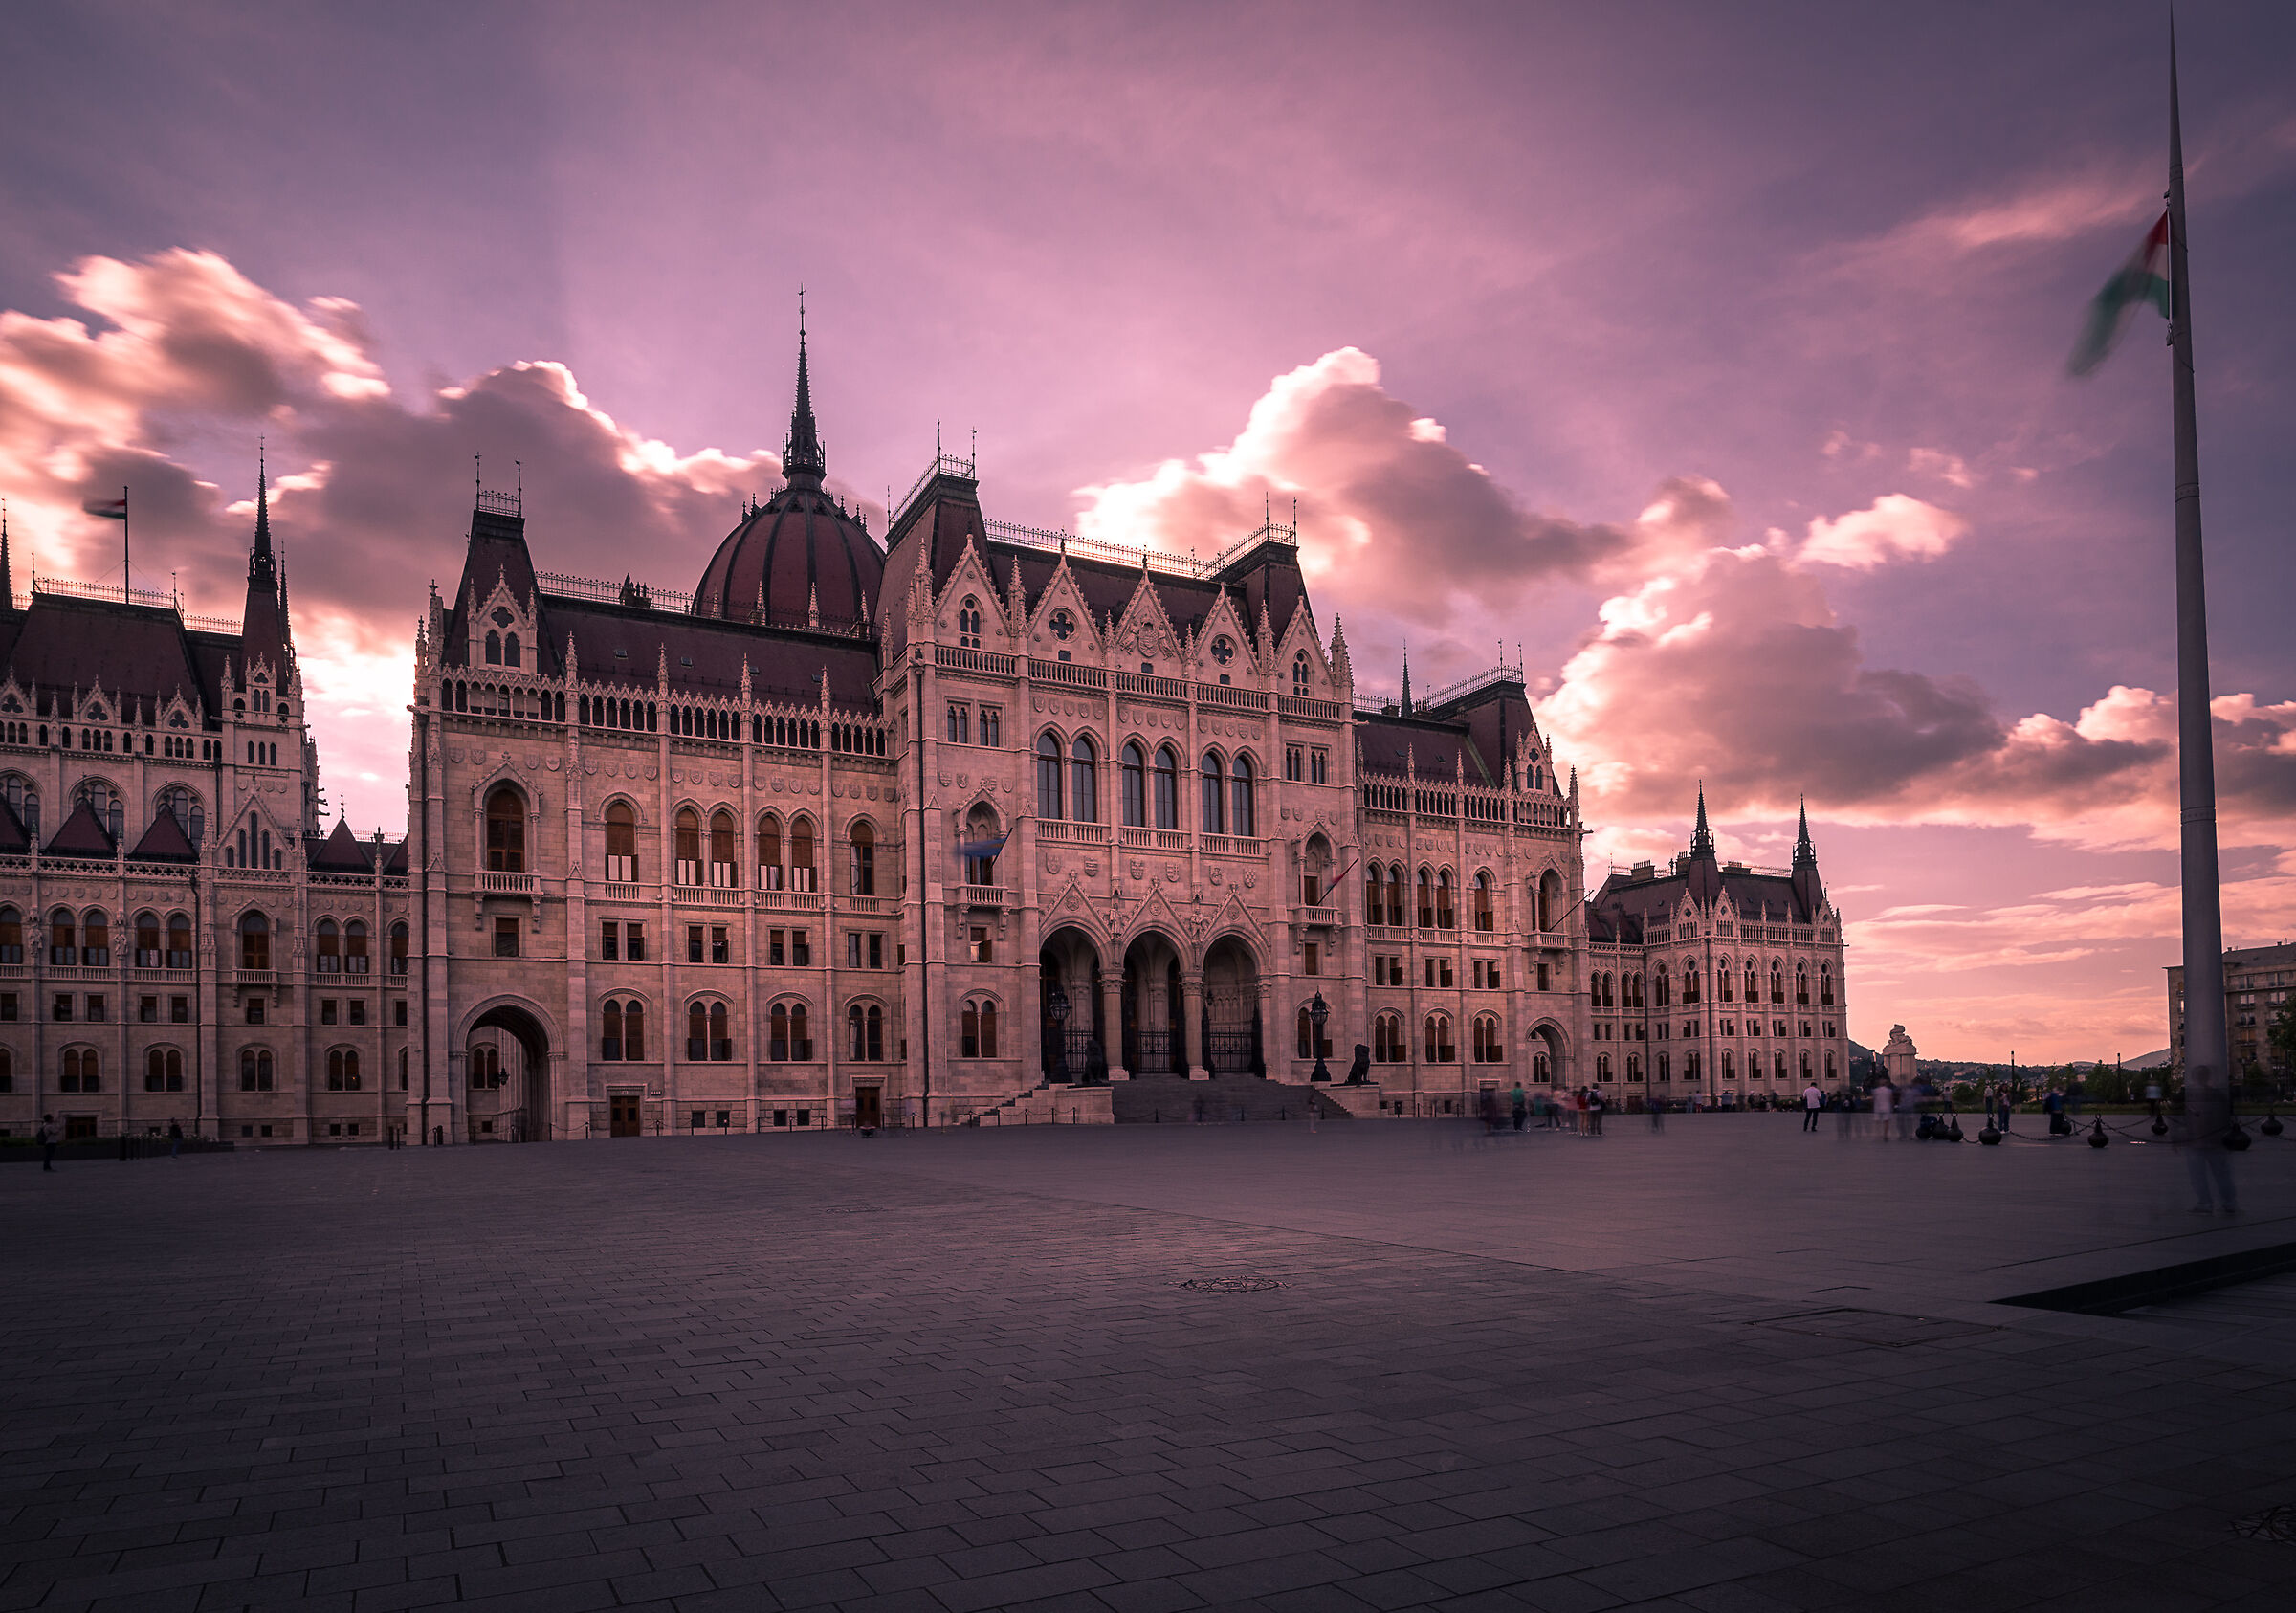 Parlamento di Budapest...